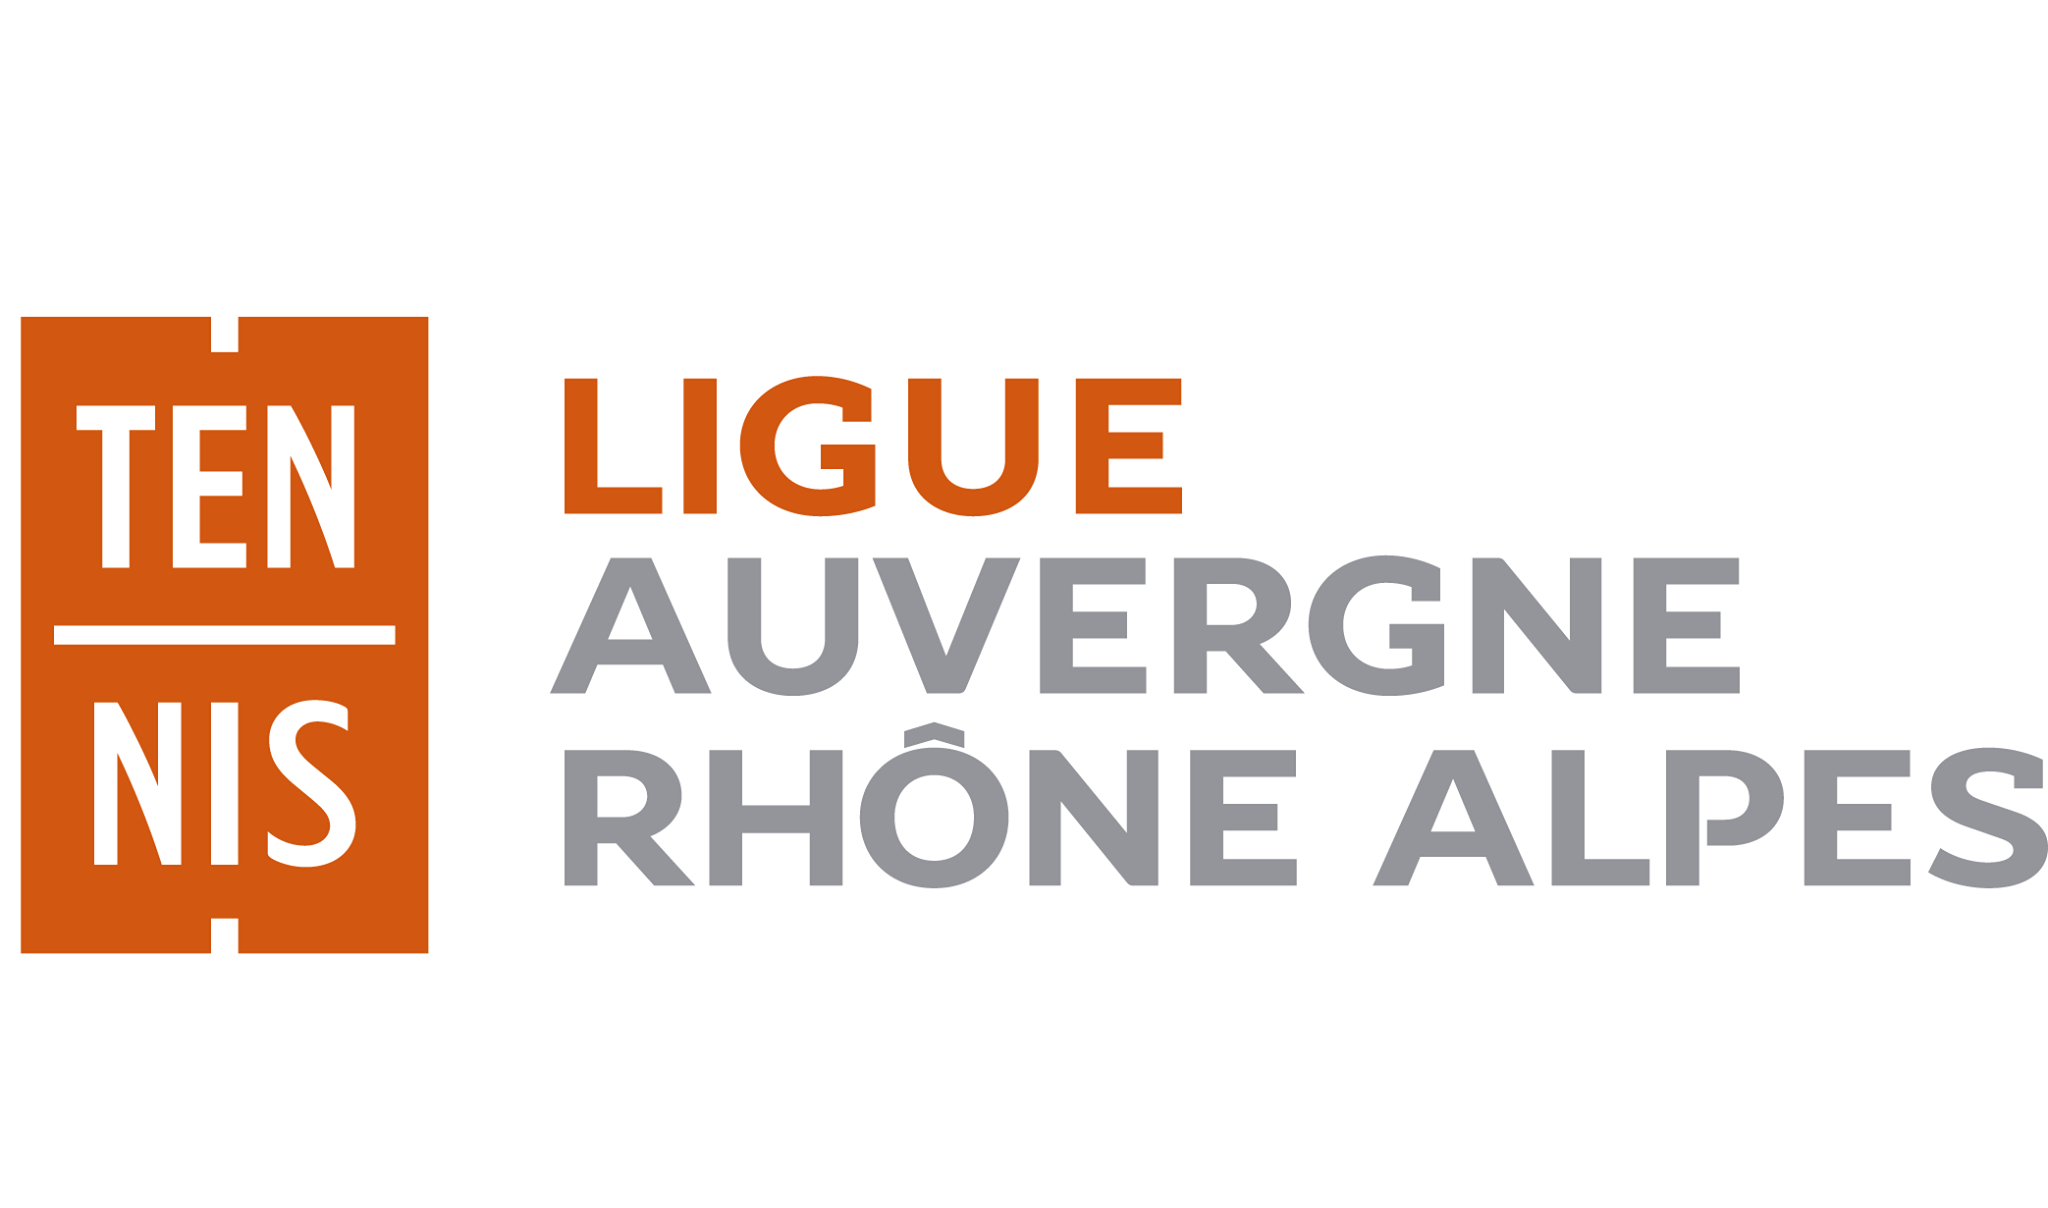 A liga Auvergne-Rhône-Alpes está recrutando!